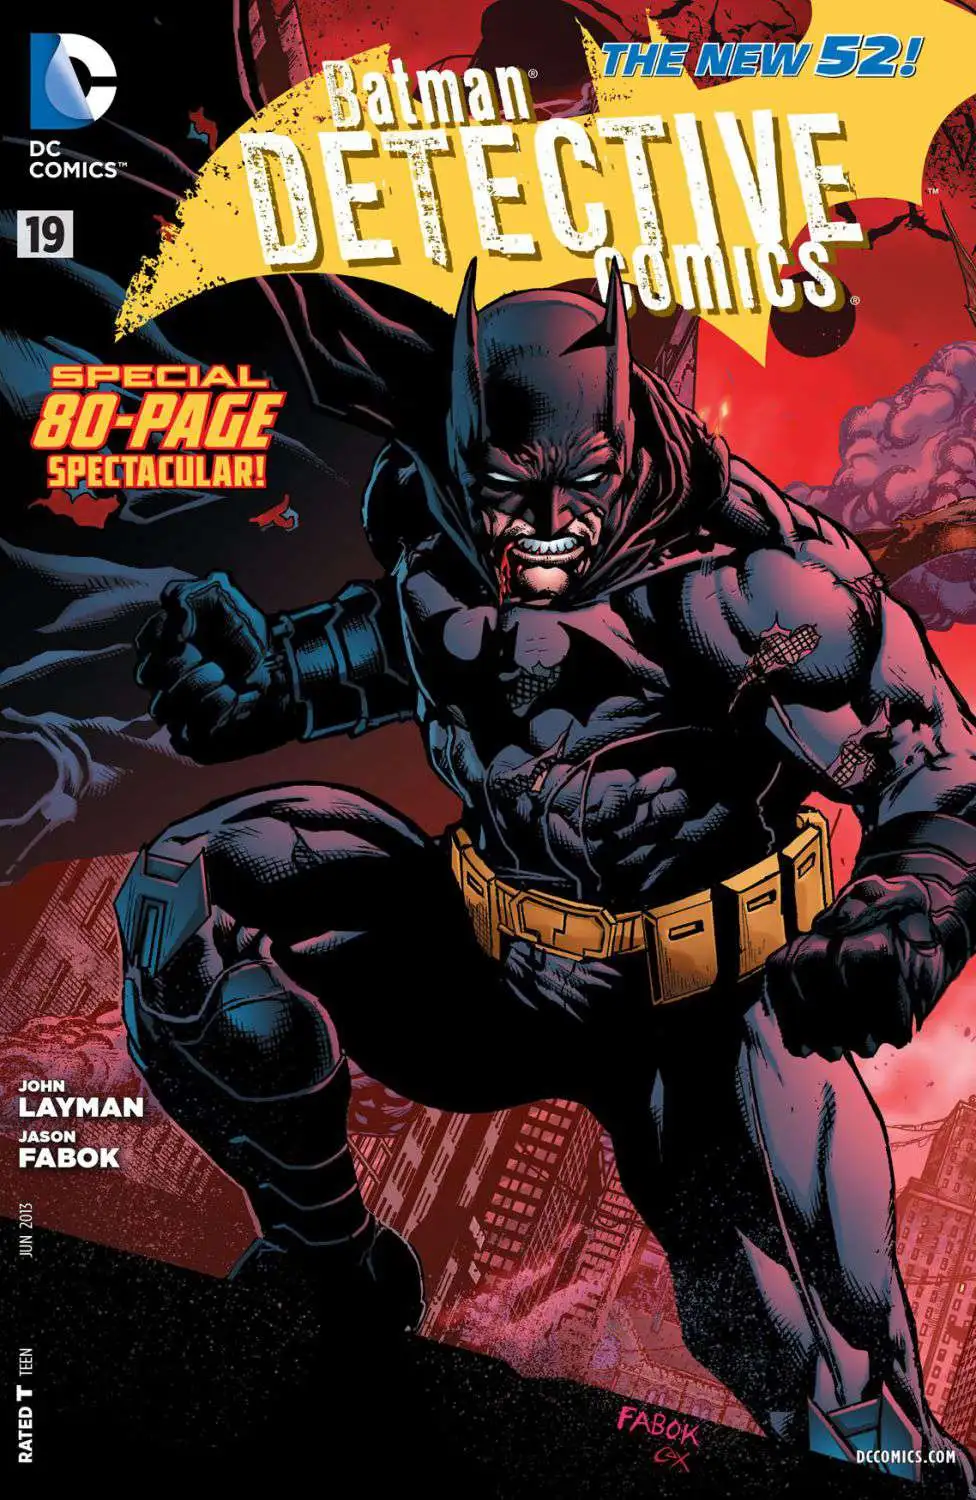 Recuento Desagradable escaldadura DC The New 52 Detective Comics Batman Comic Book 19 DC Comics - ToyWiz